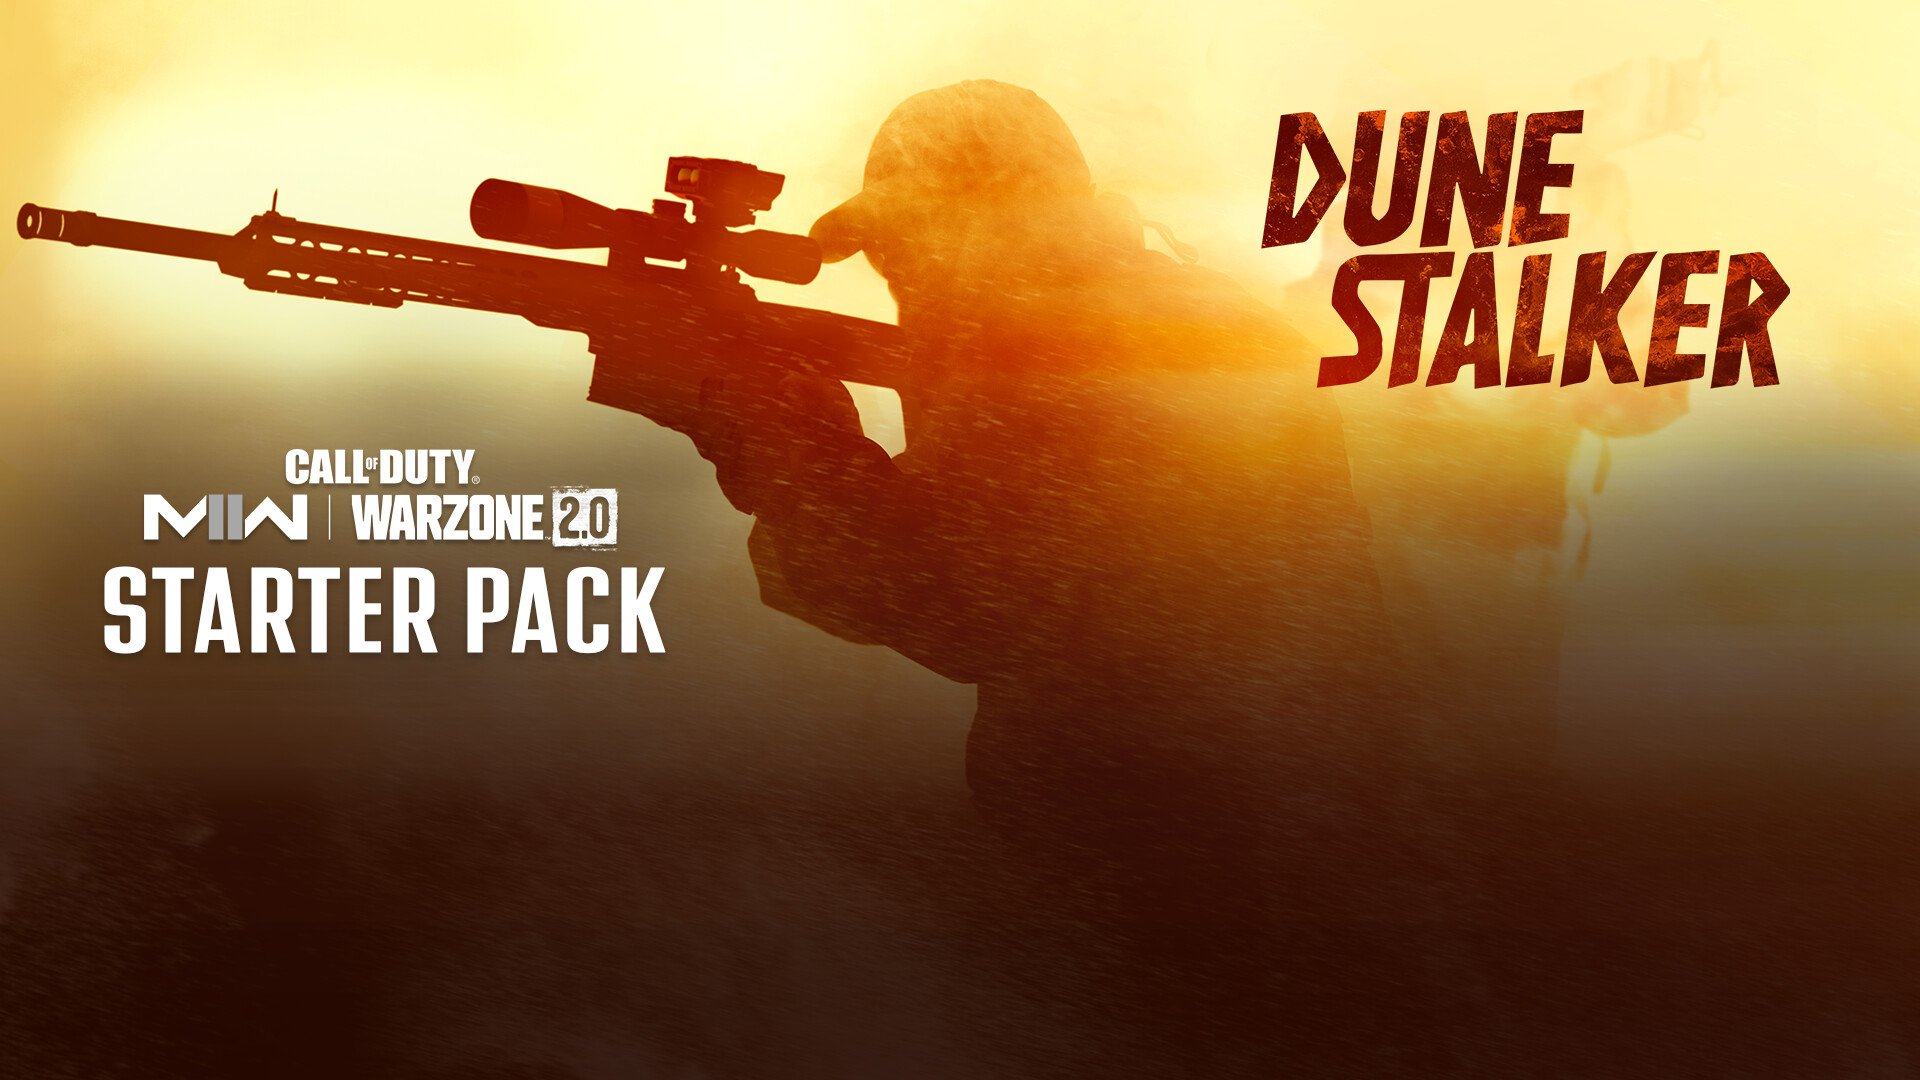 Call of Duty: Modern Warfare II - Dune Stalker: Starter Pack DLC Steam Altergift $13.93